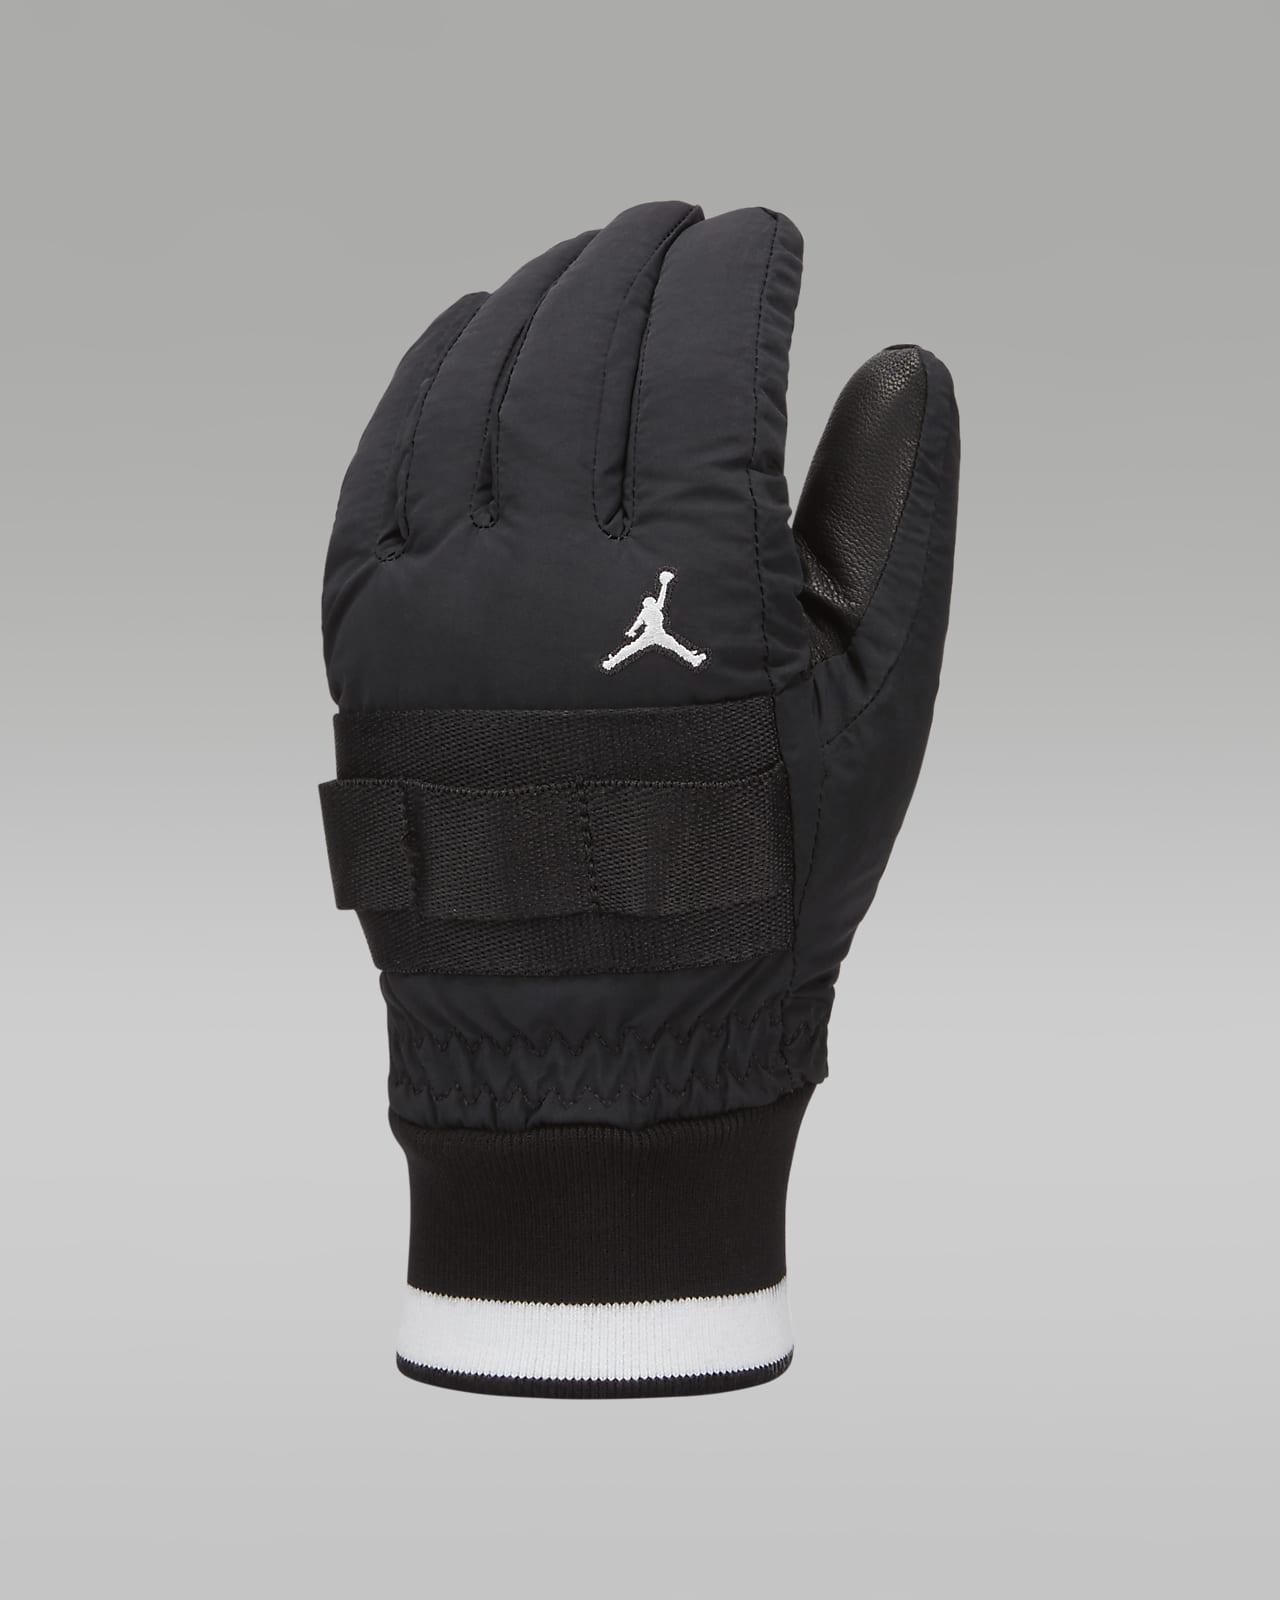 Jordan Men's Insulated Training Gloves